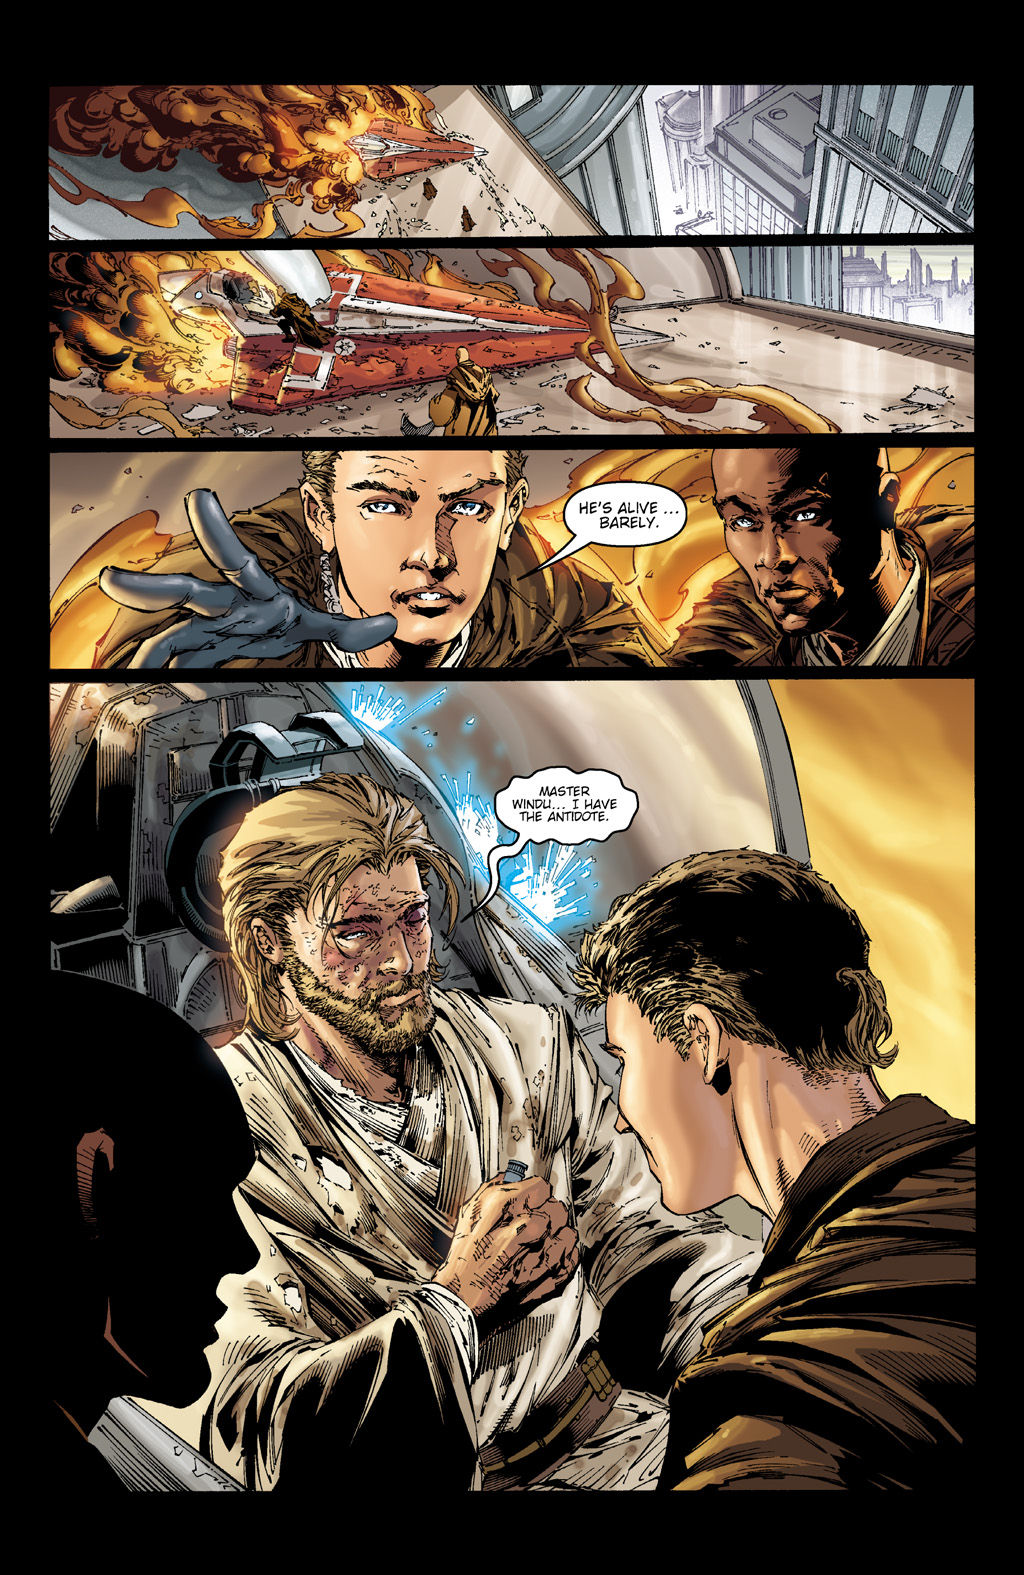 Read online Star Wars: Clone Wars comic -  Issue # TPB 2 - 53